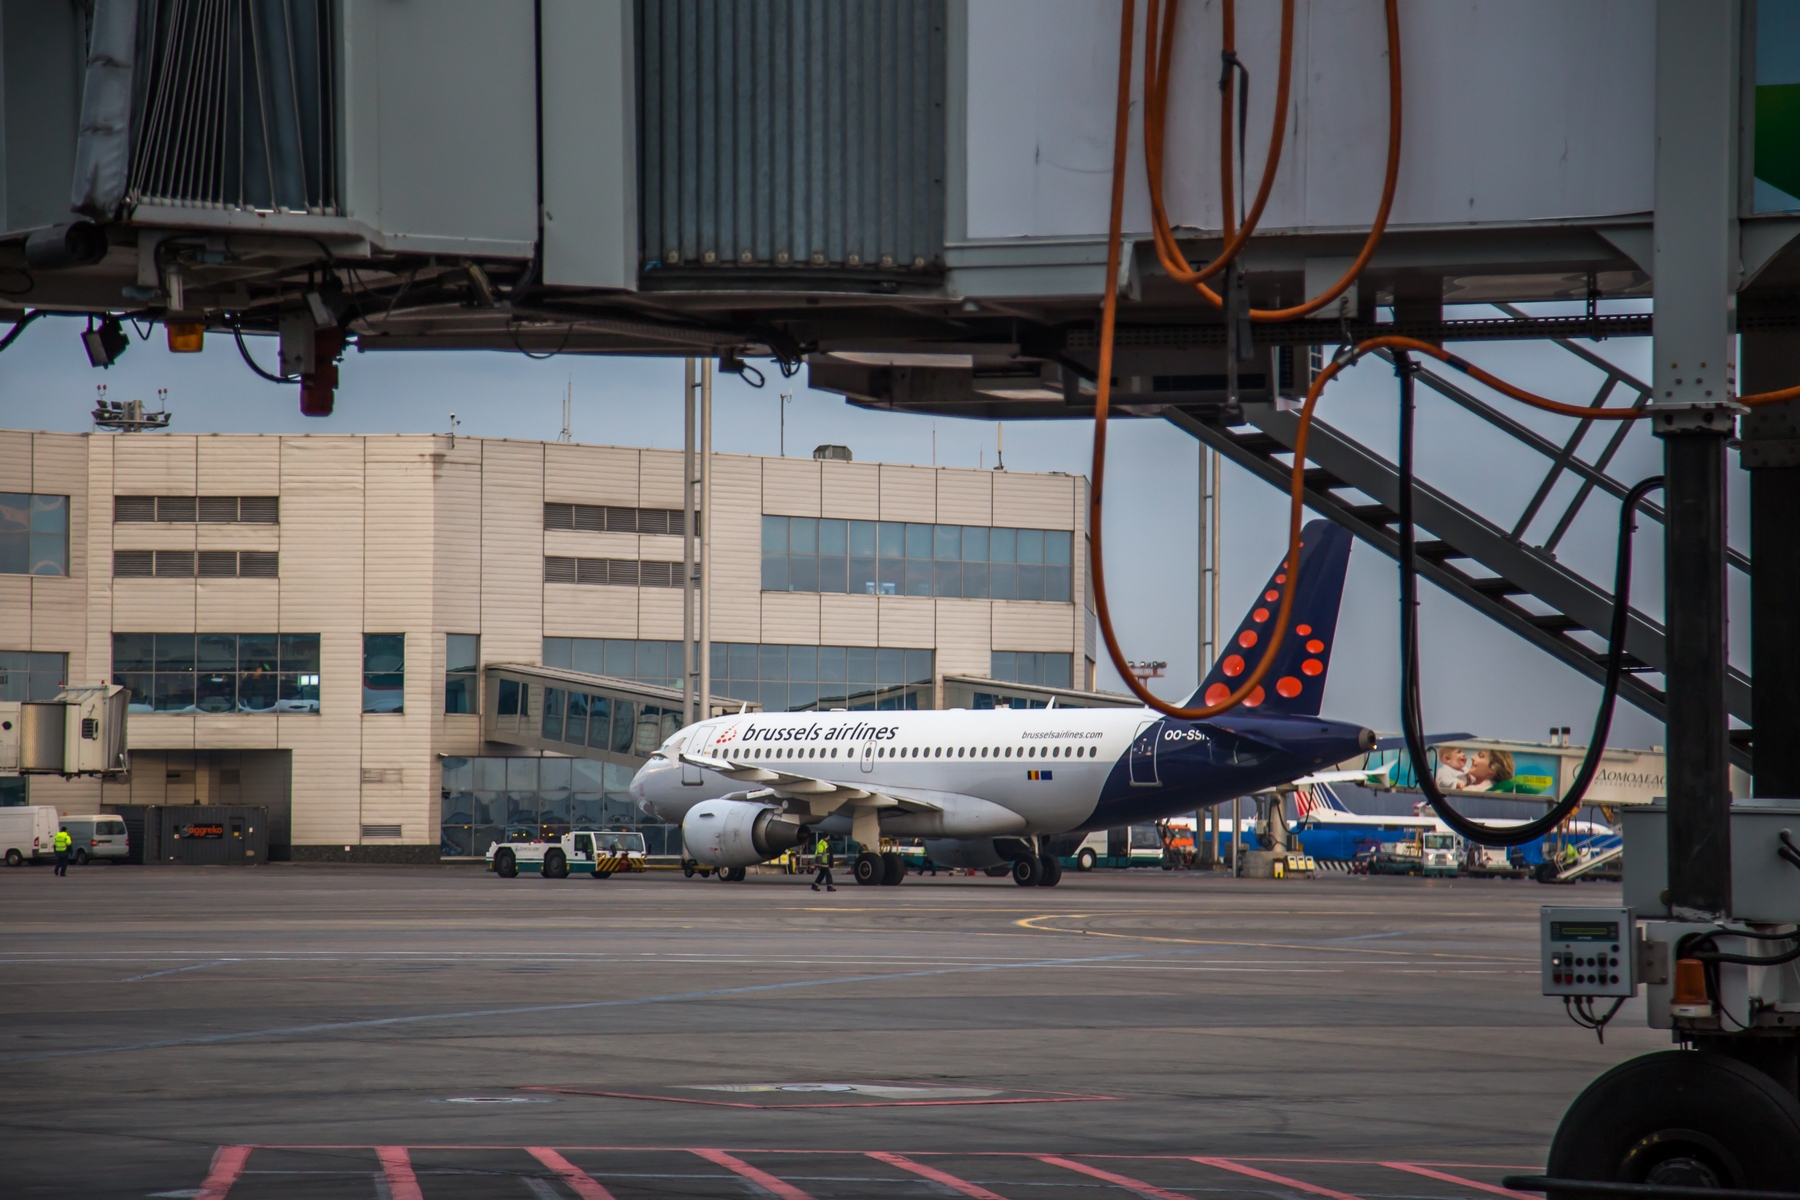 Brussels Airlines ежедневно теряет 5 млн евро после закрытия аэропорта в Брюсселе